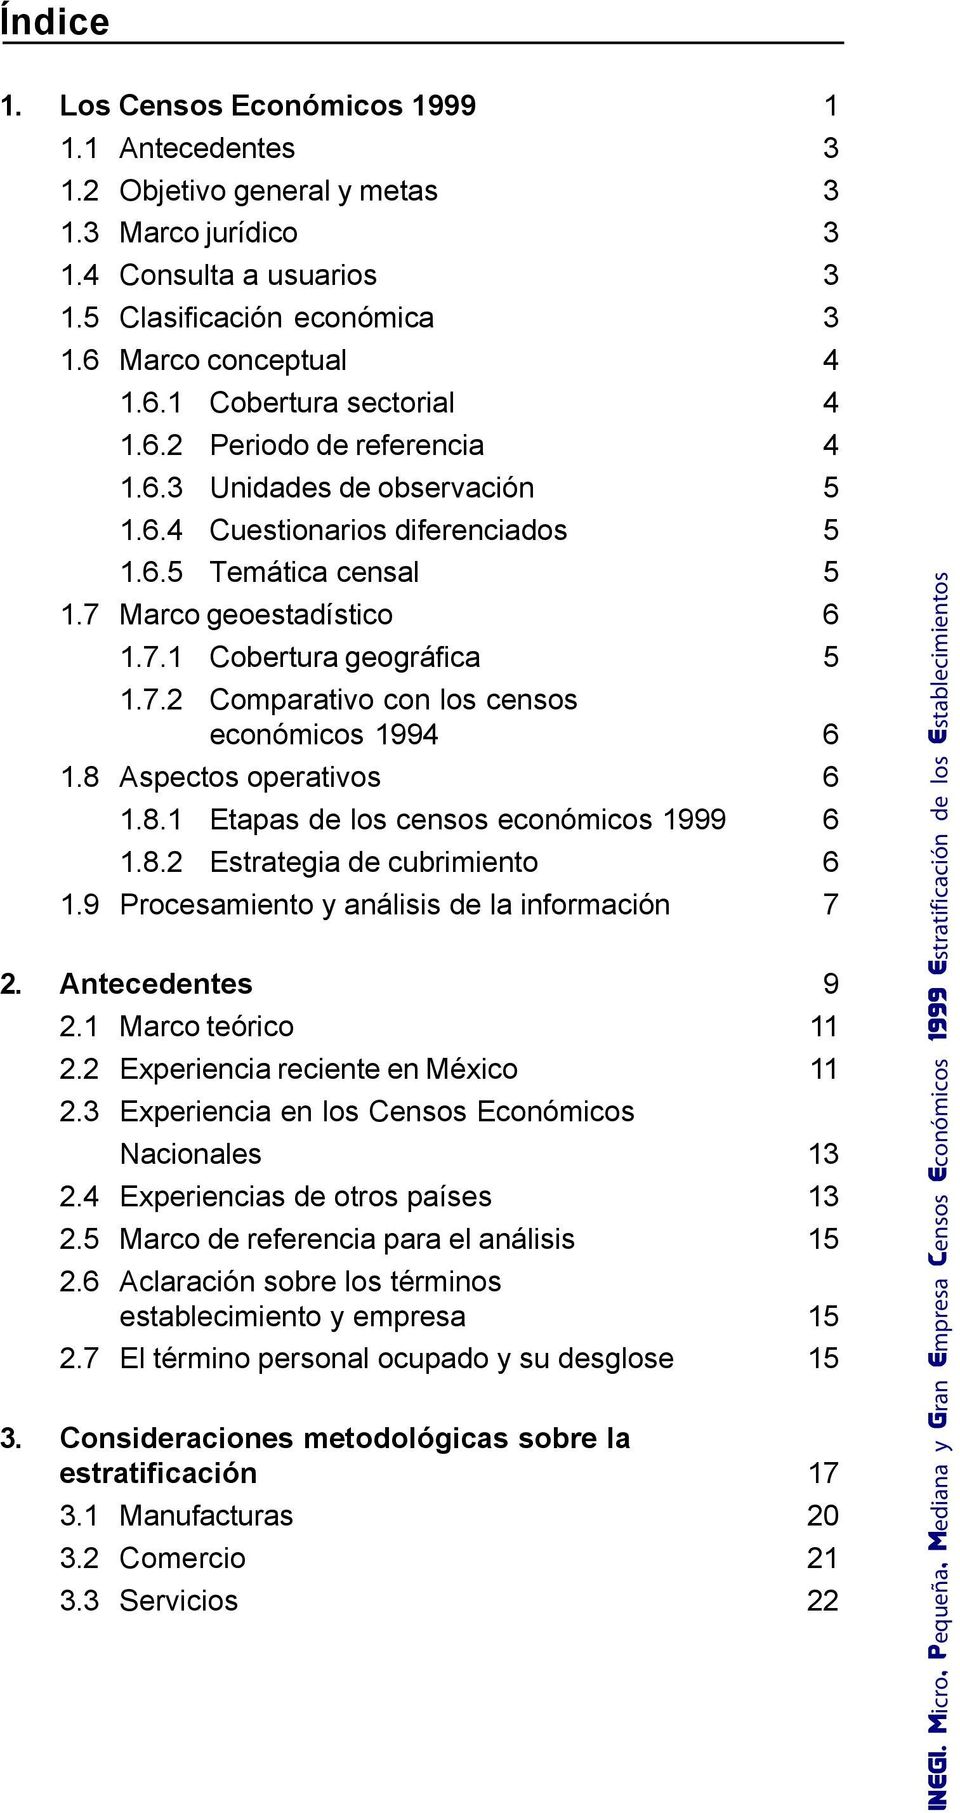 8 Aspectos operativos 6 1.8.1 Etapas de los censos económicos 1999 6 1.8.2 Estrategia de cubrimiento 6 1.9 Procesamiento y análisis de la información 7 2. Antecedentes 9 2.1 Marco teórico 11 2.